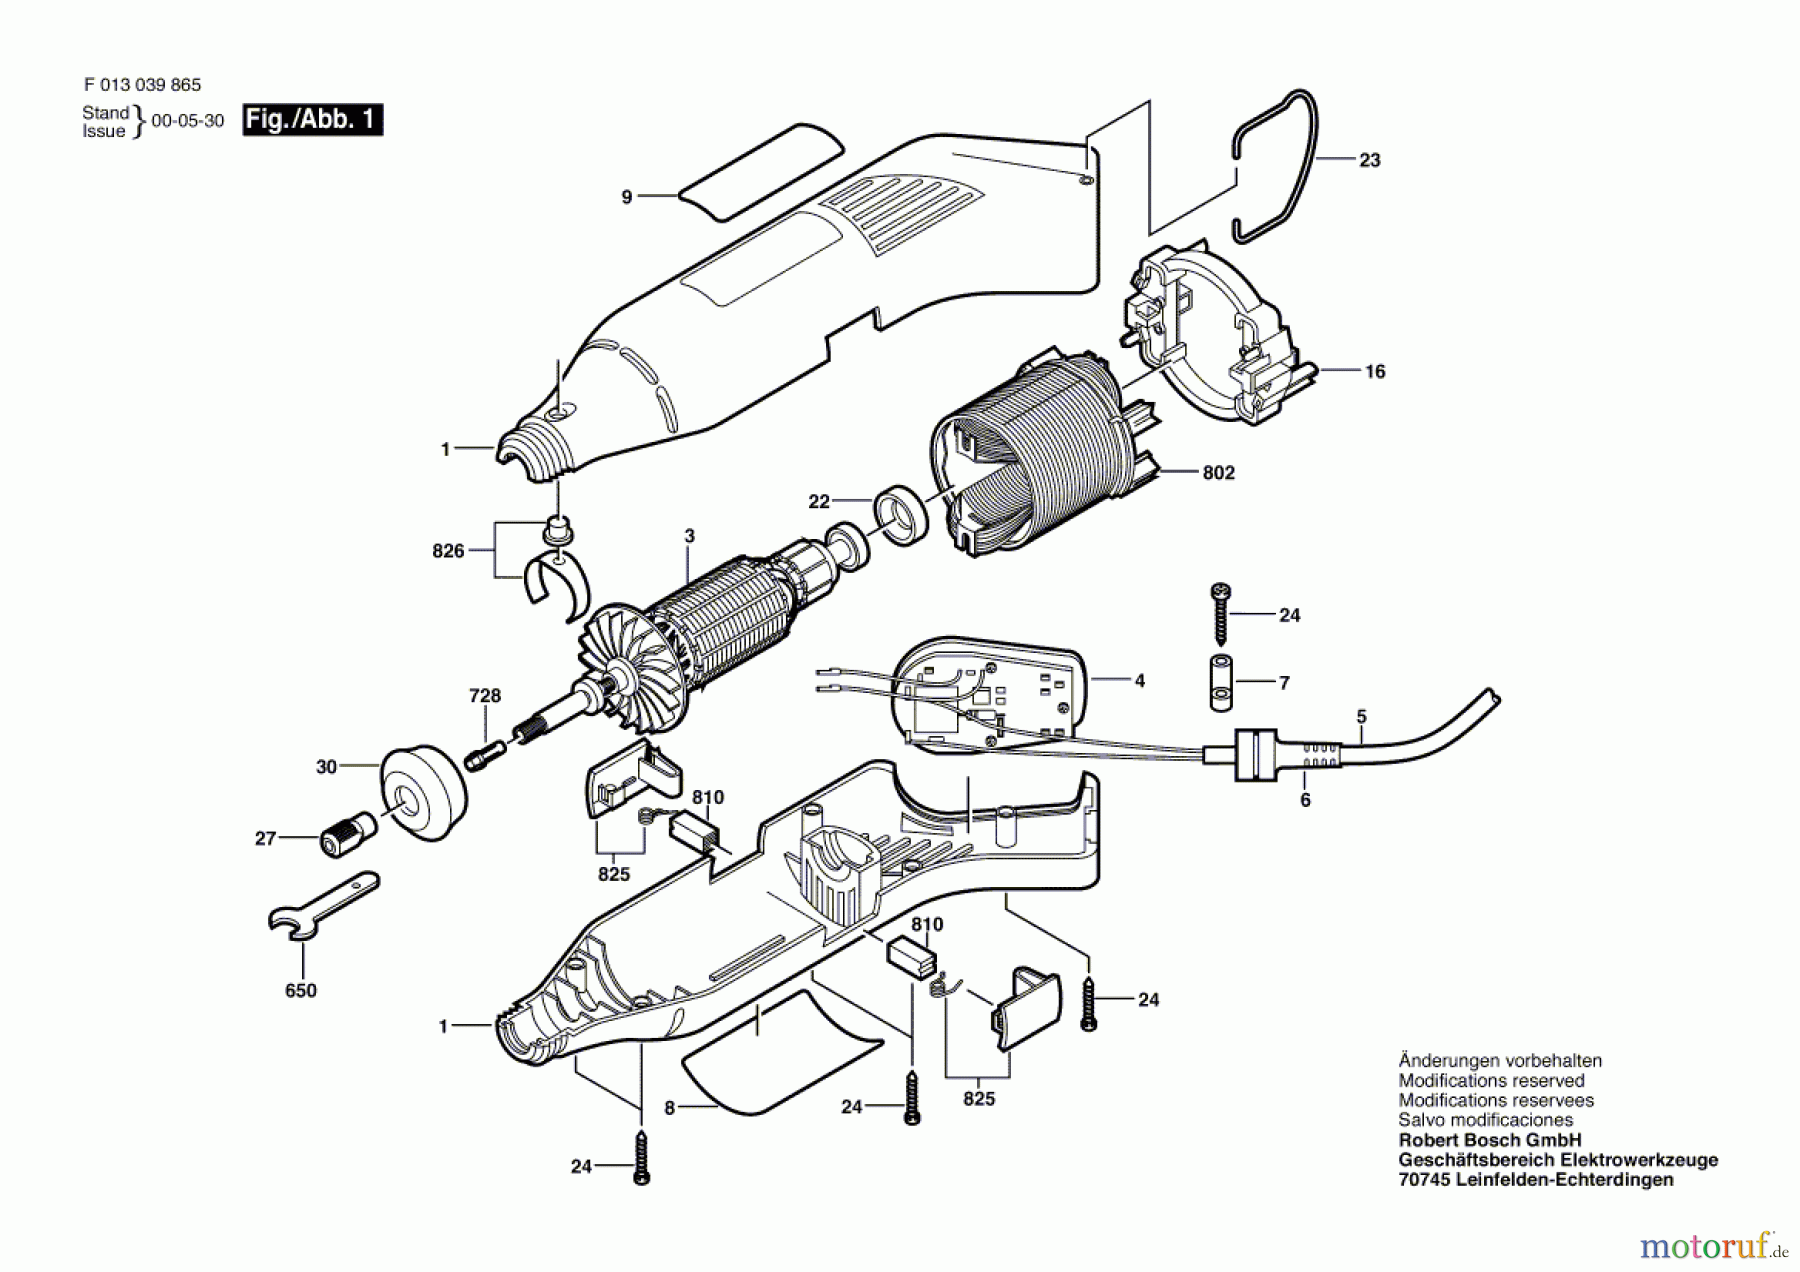  Bosch Werkzeug Drehwerkzeug 398 Seite 1